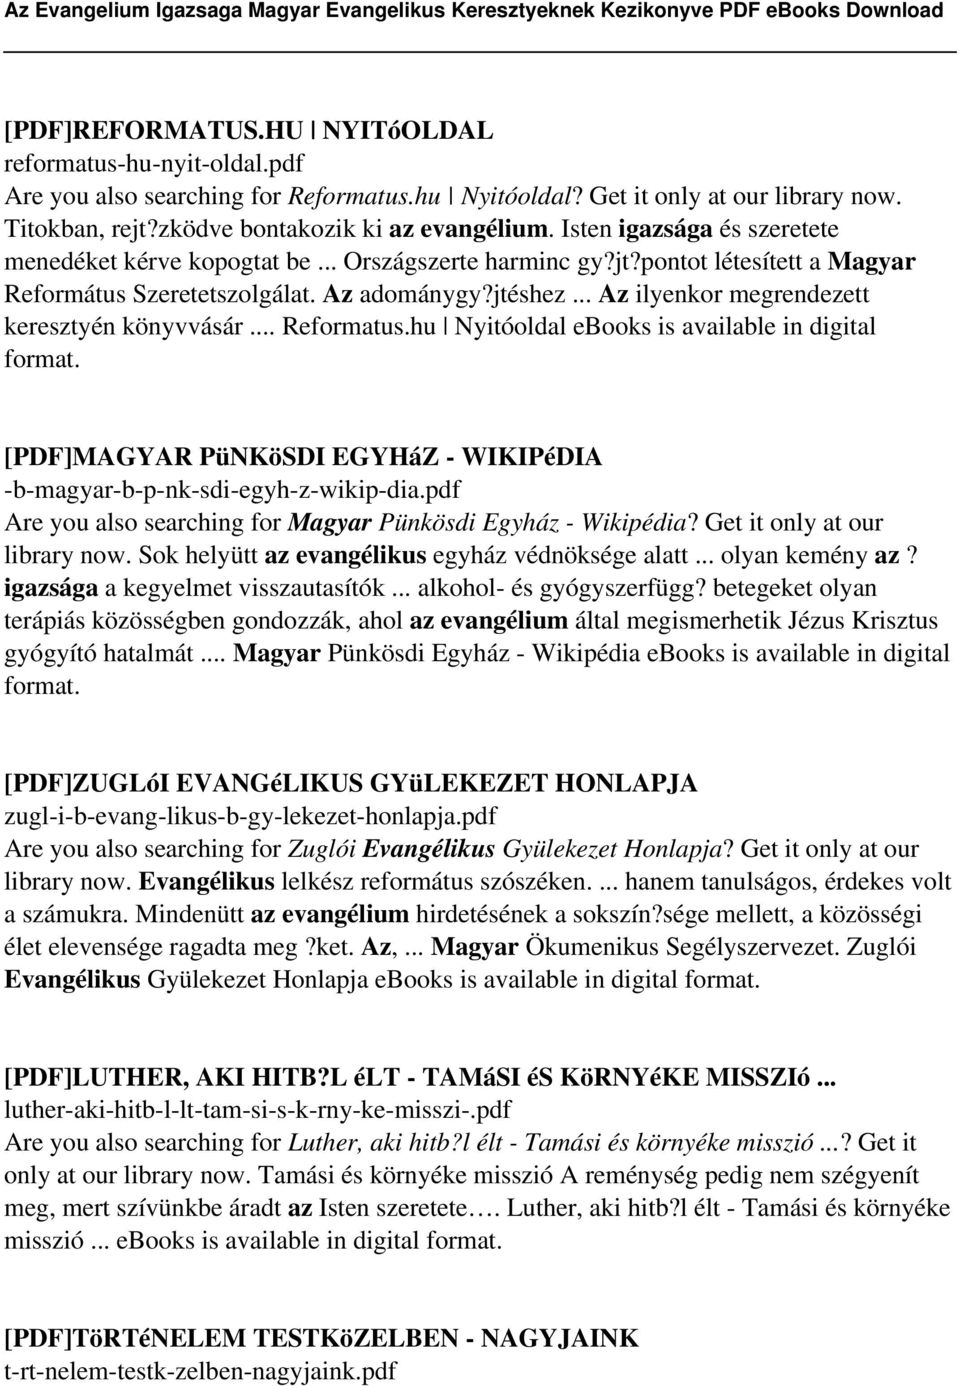 Magyar Evangélikus Digitális Tár (MEDiT)